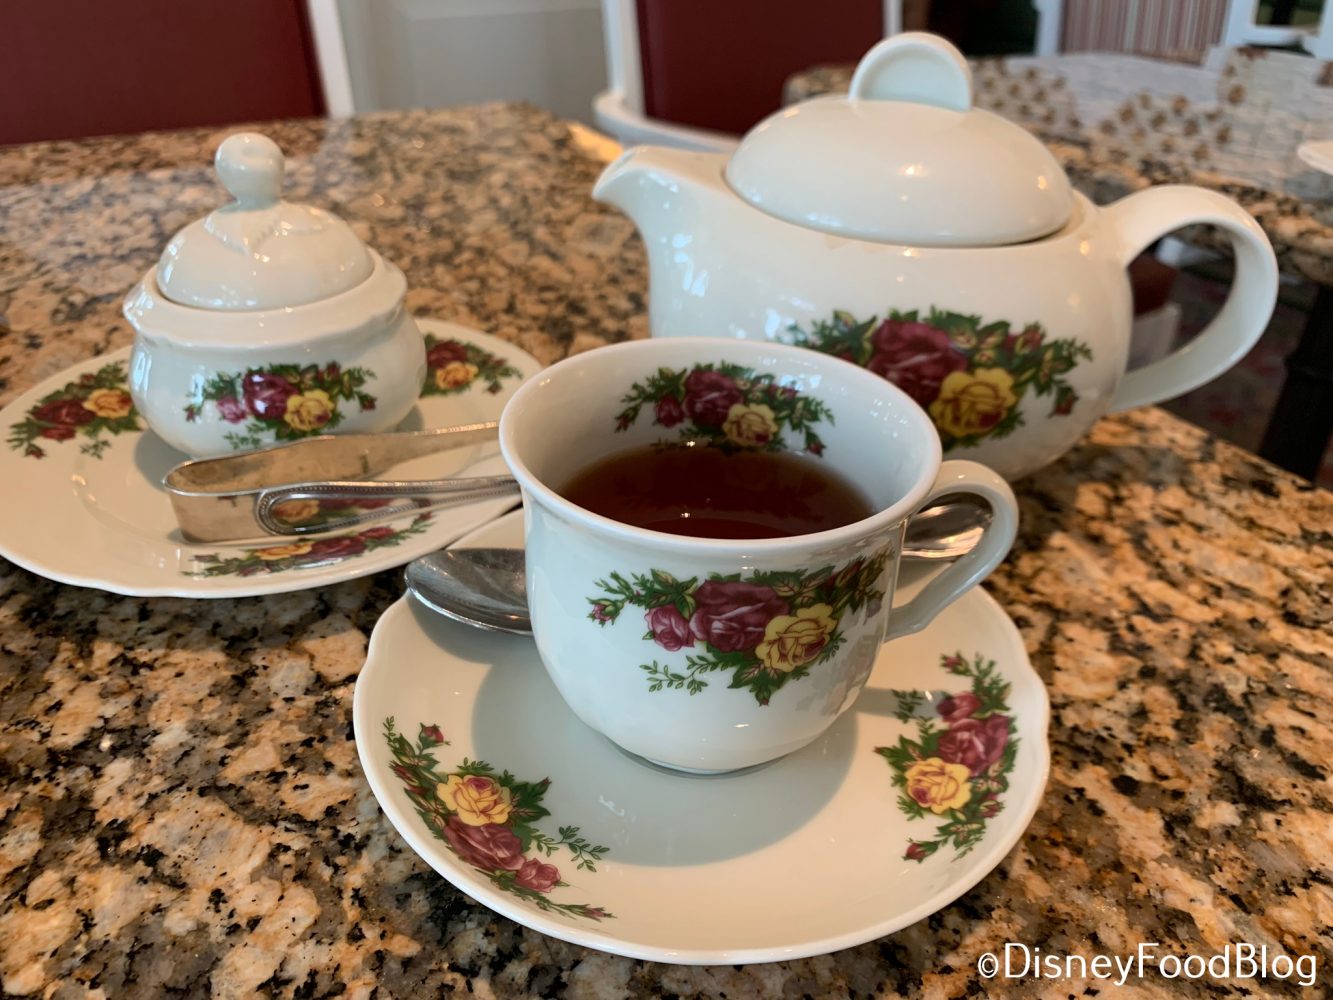 https://www.disneyfoodblog.com/wp-content/uploads/2019/10/Tea-_-Afternoon-Tea-_-Grand-Floridian-Garden-View-Tea-Room-_-Oct-2019-0034-2-e1571017769674.jpeg